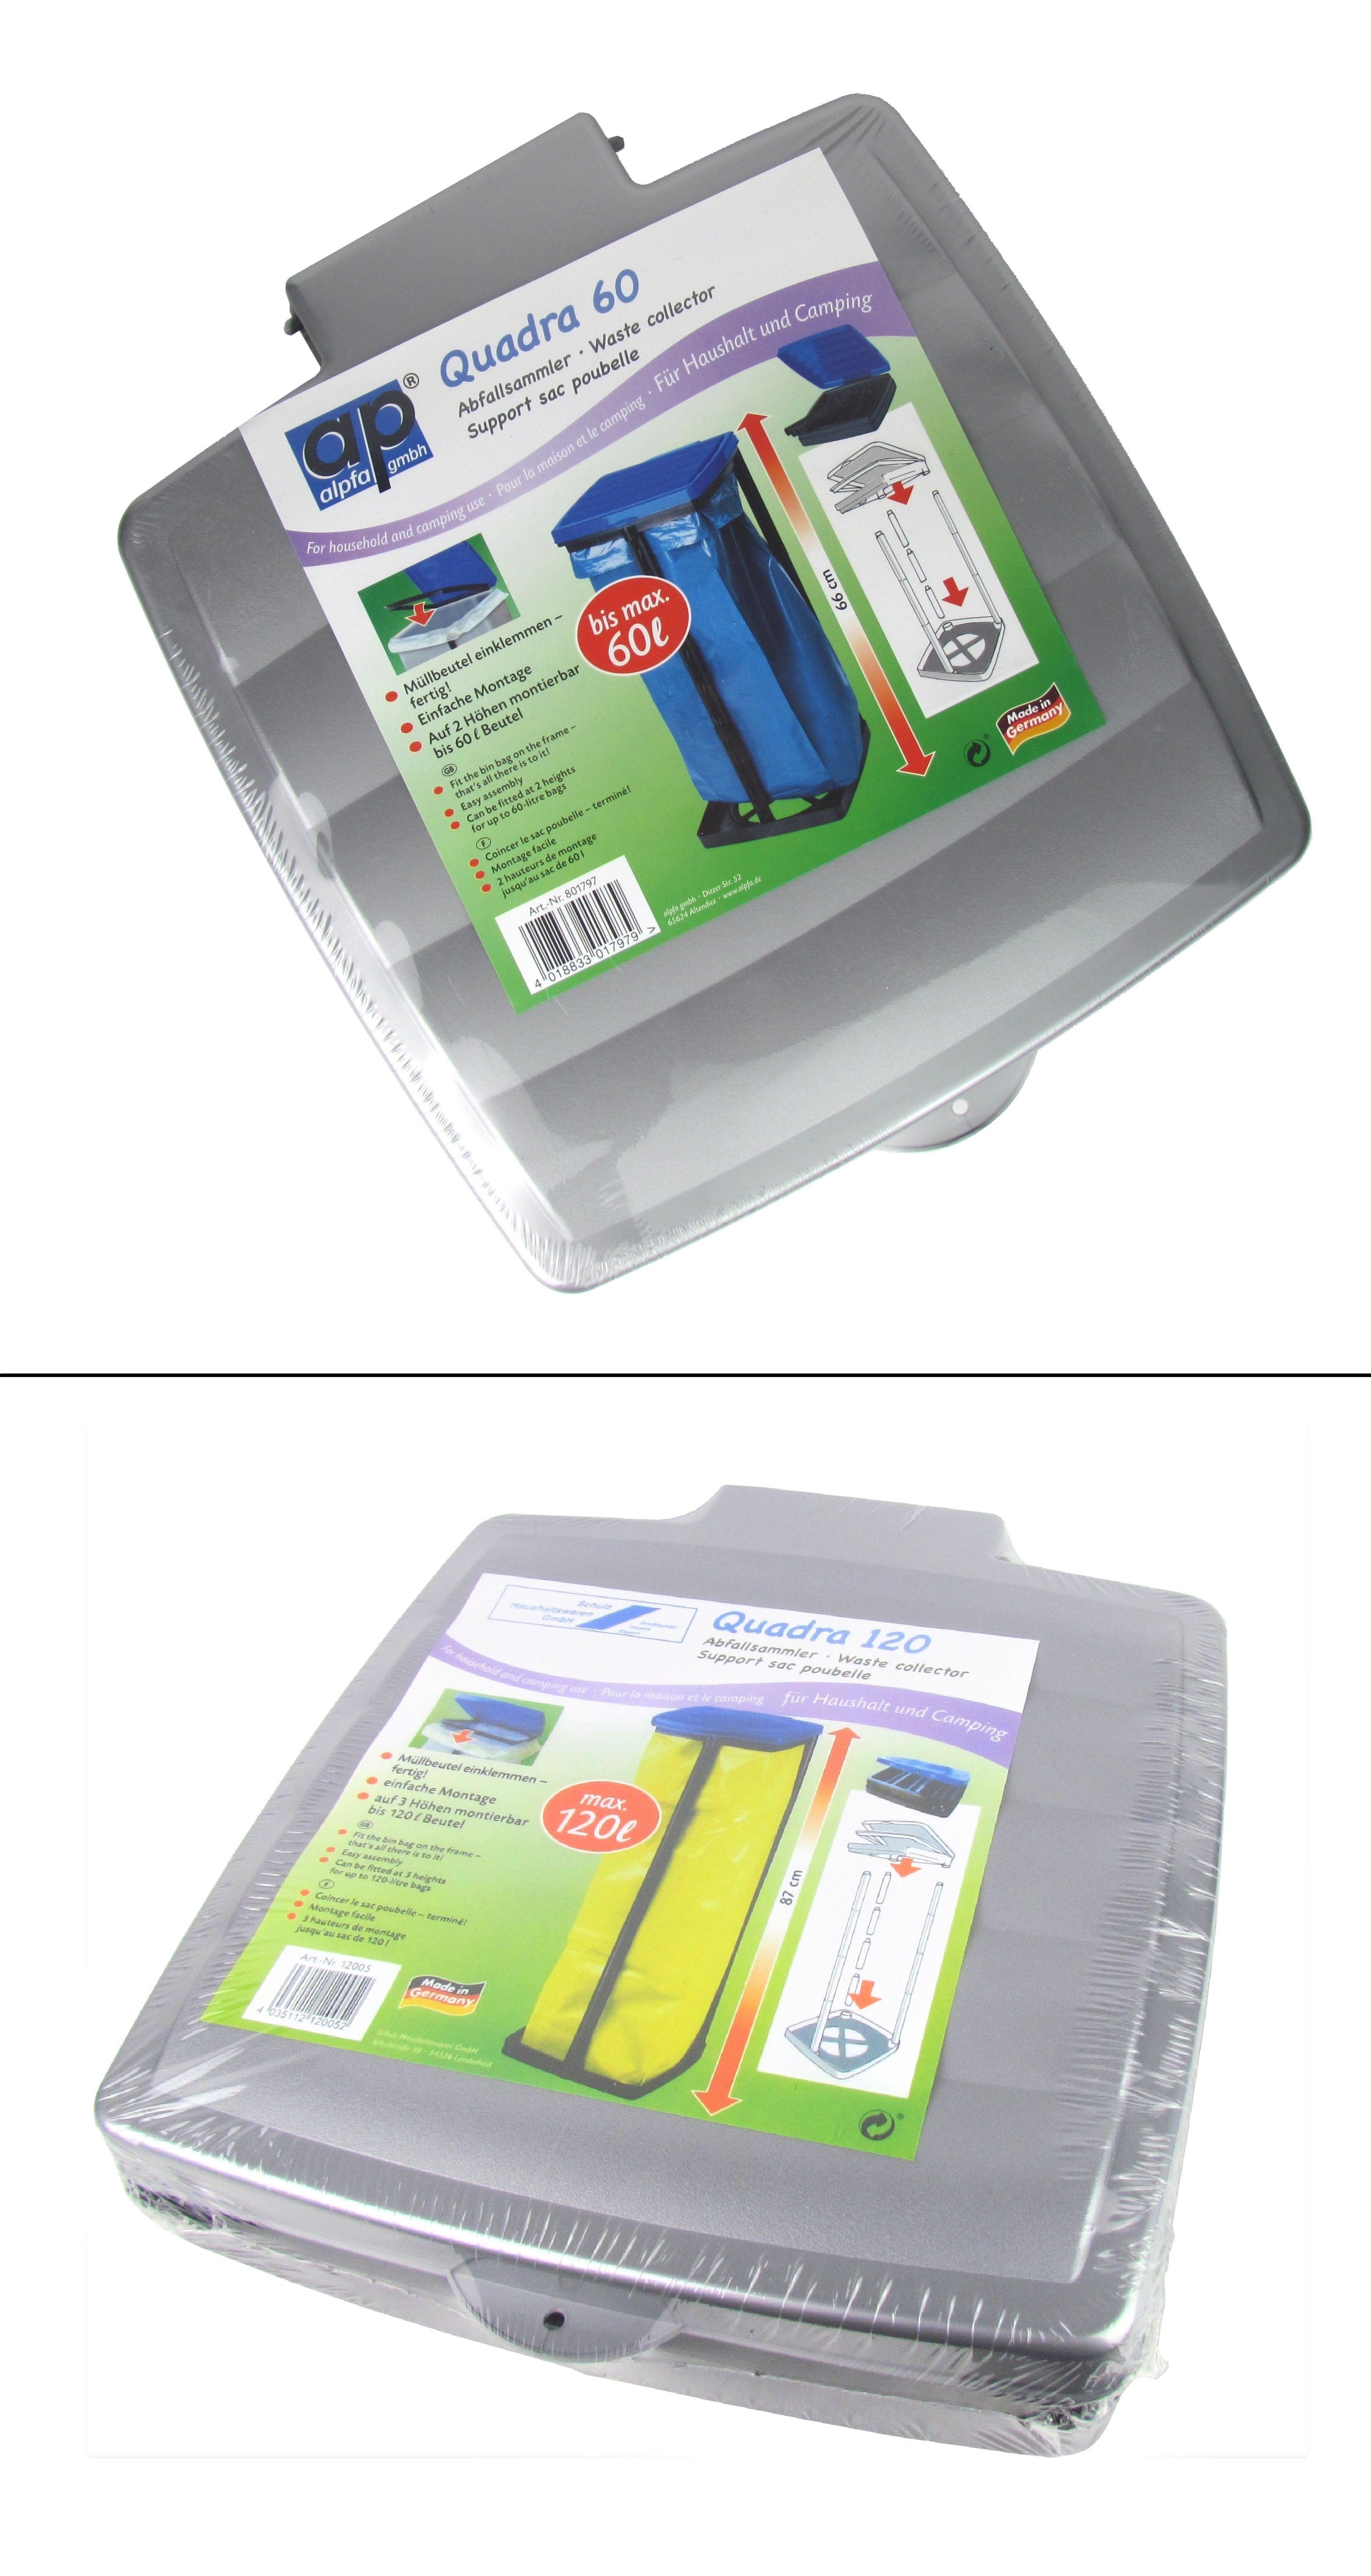 ALPFA Müllsackständer Abfallsammler/Müllsackständer für 60 oder 120 Liter - grau, Geeignet für Säcke 60 l oder 120 l, Qualität Made in Germany